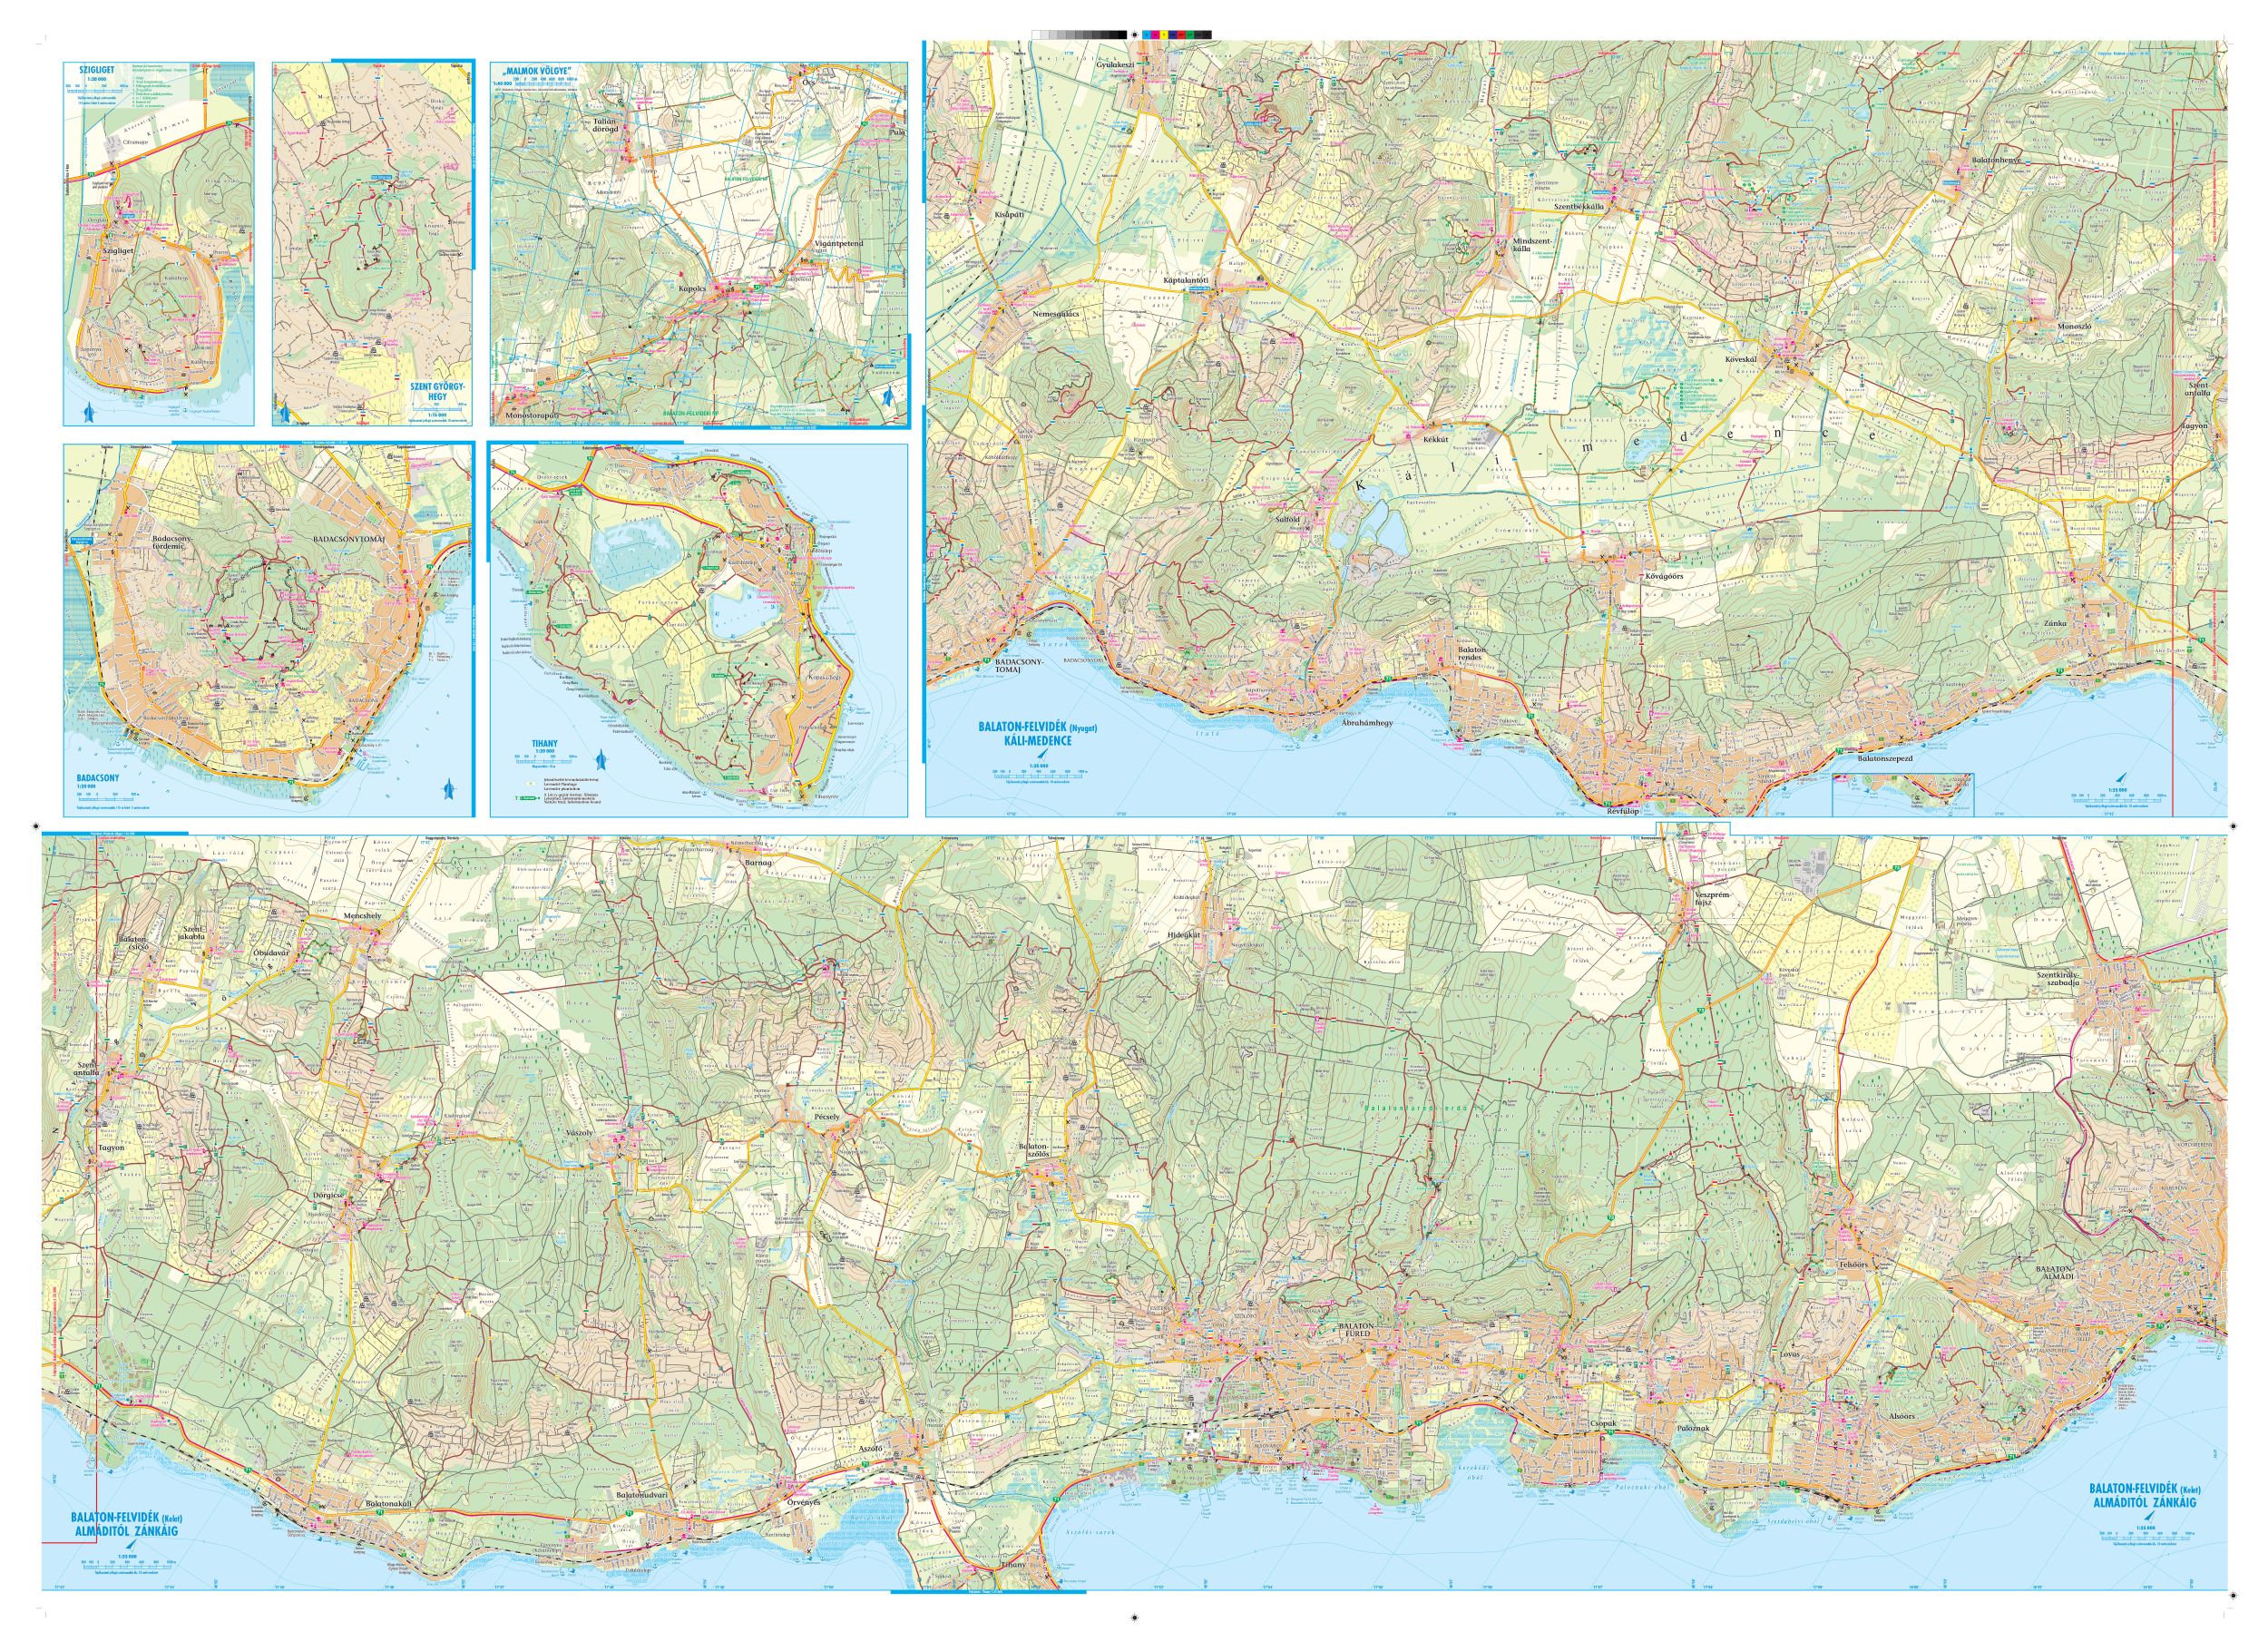 A részletes Balaton-felvidék térkép által lefedett terület